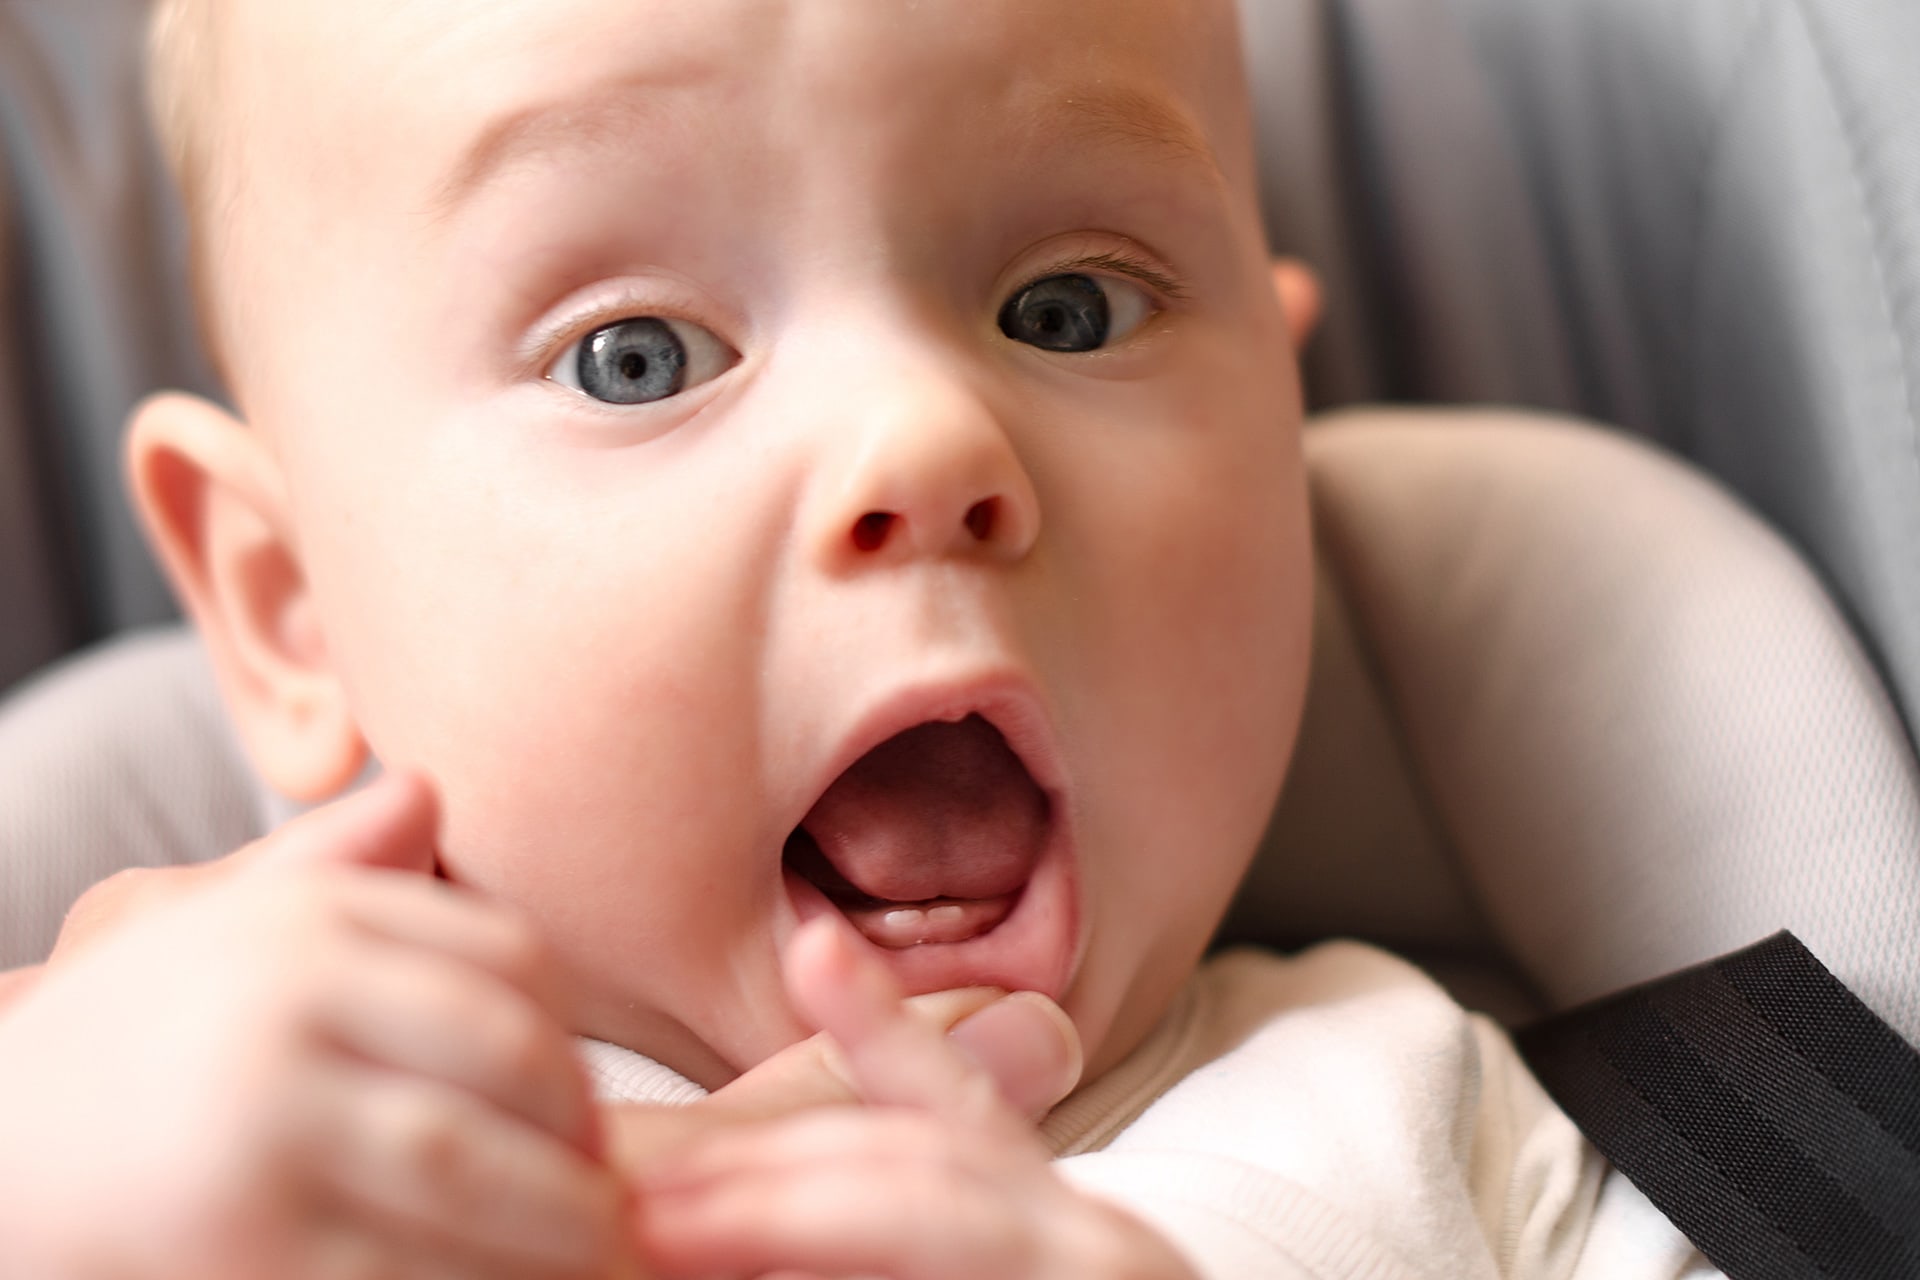  Zähneputzen beim Baby | Header Image 